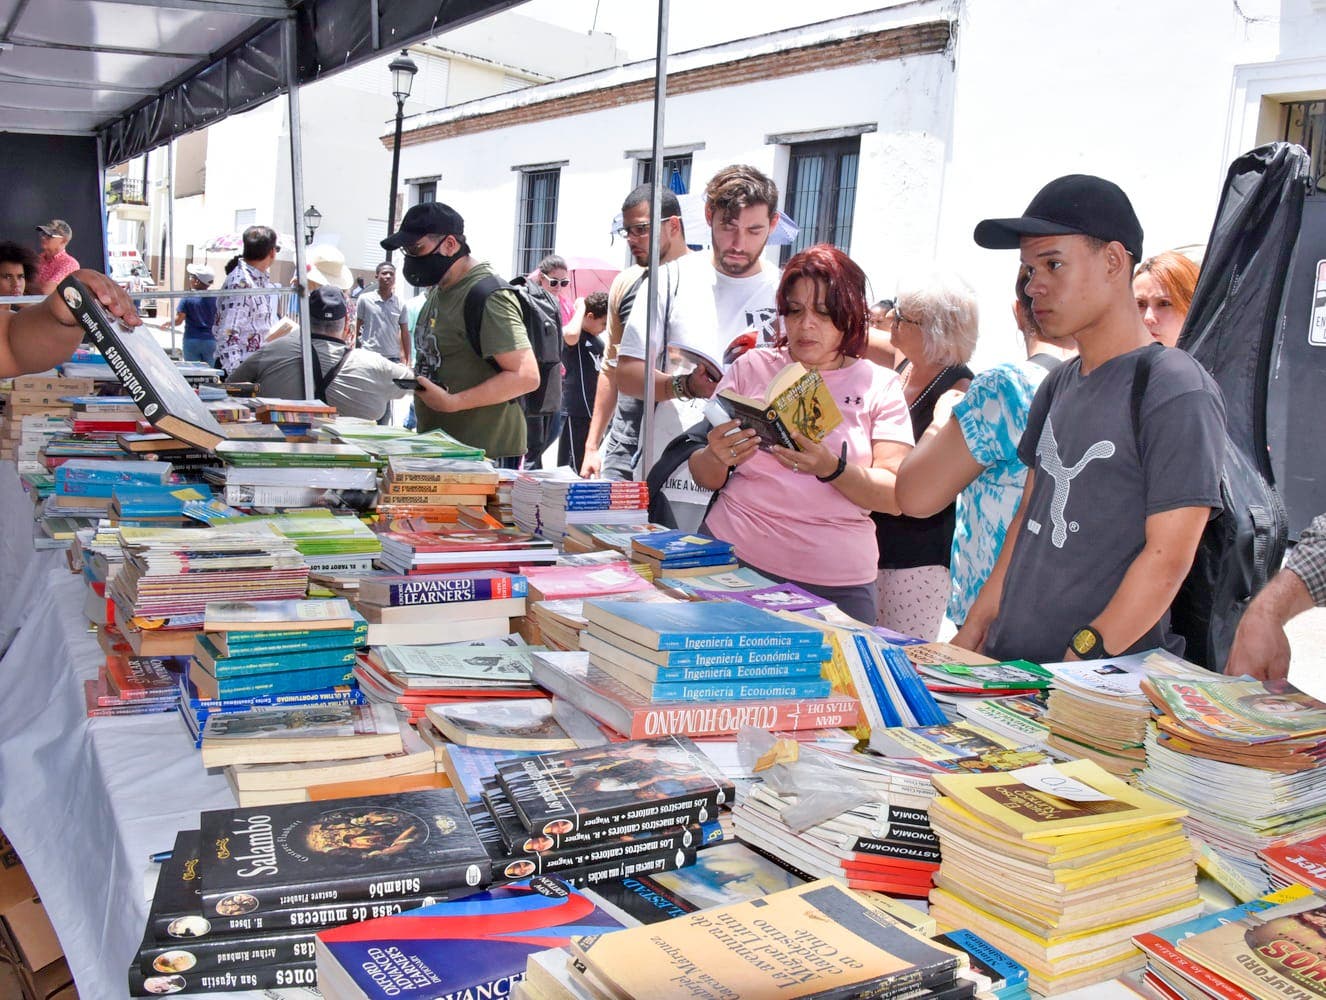 Textos de diferentes géneros a bajo precio abundan en la Feria del Libro